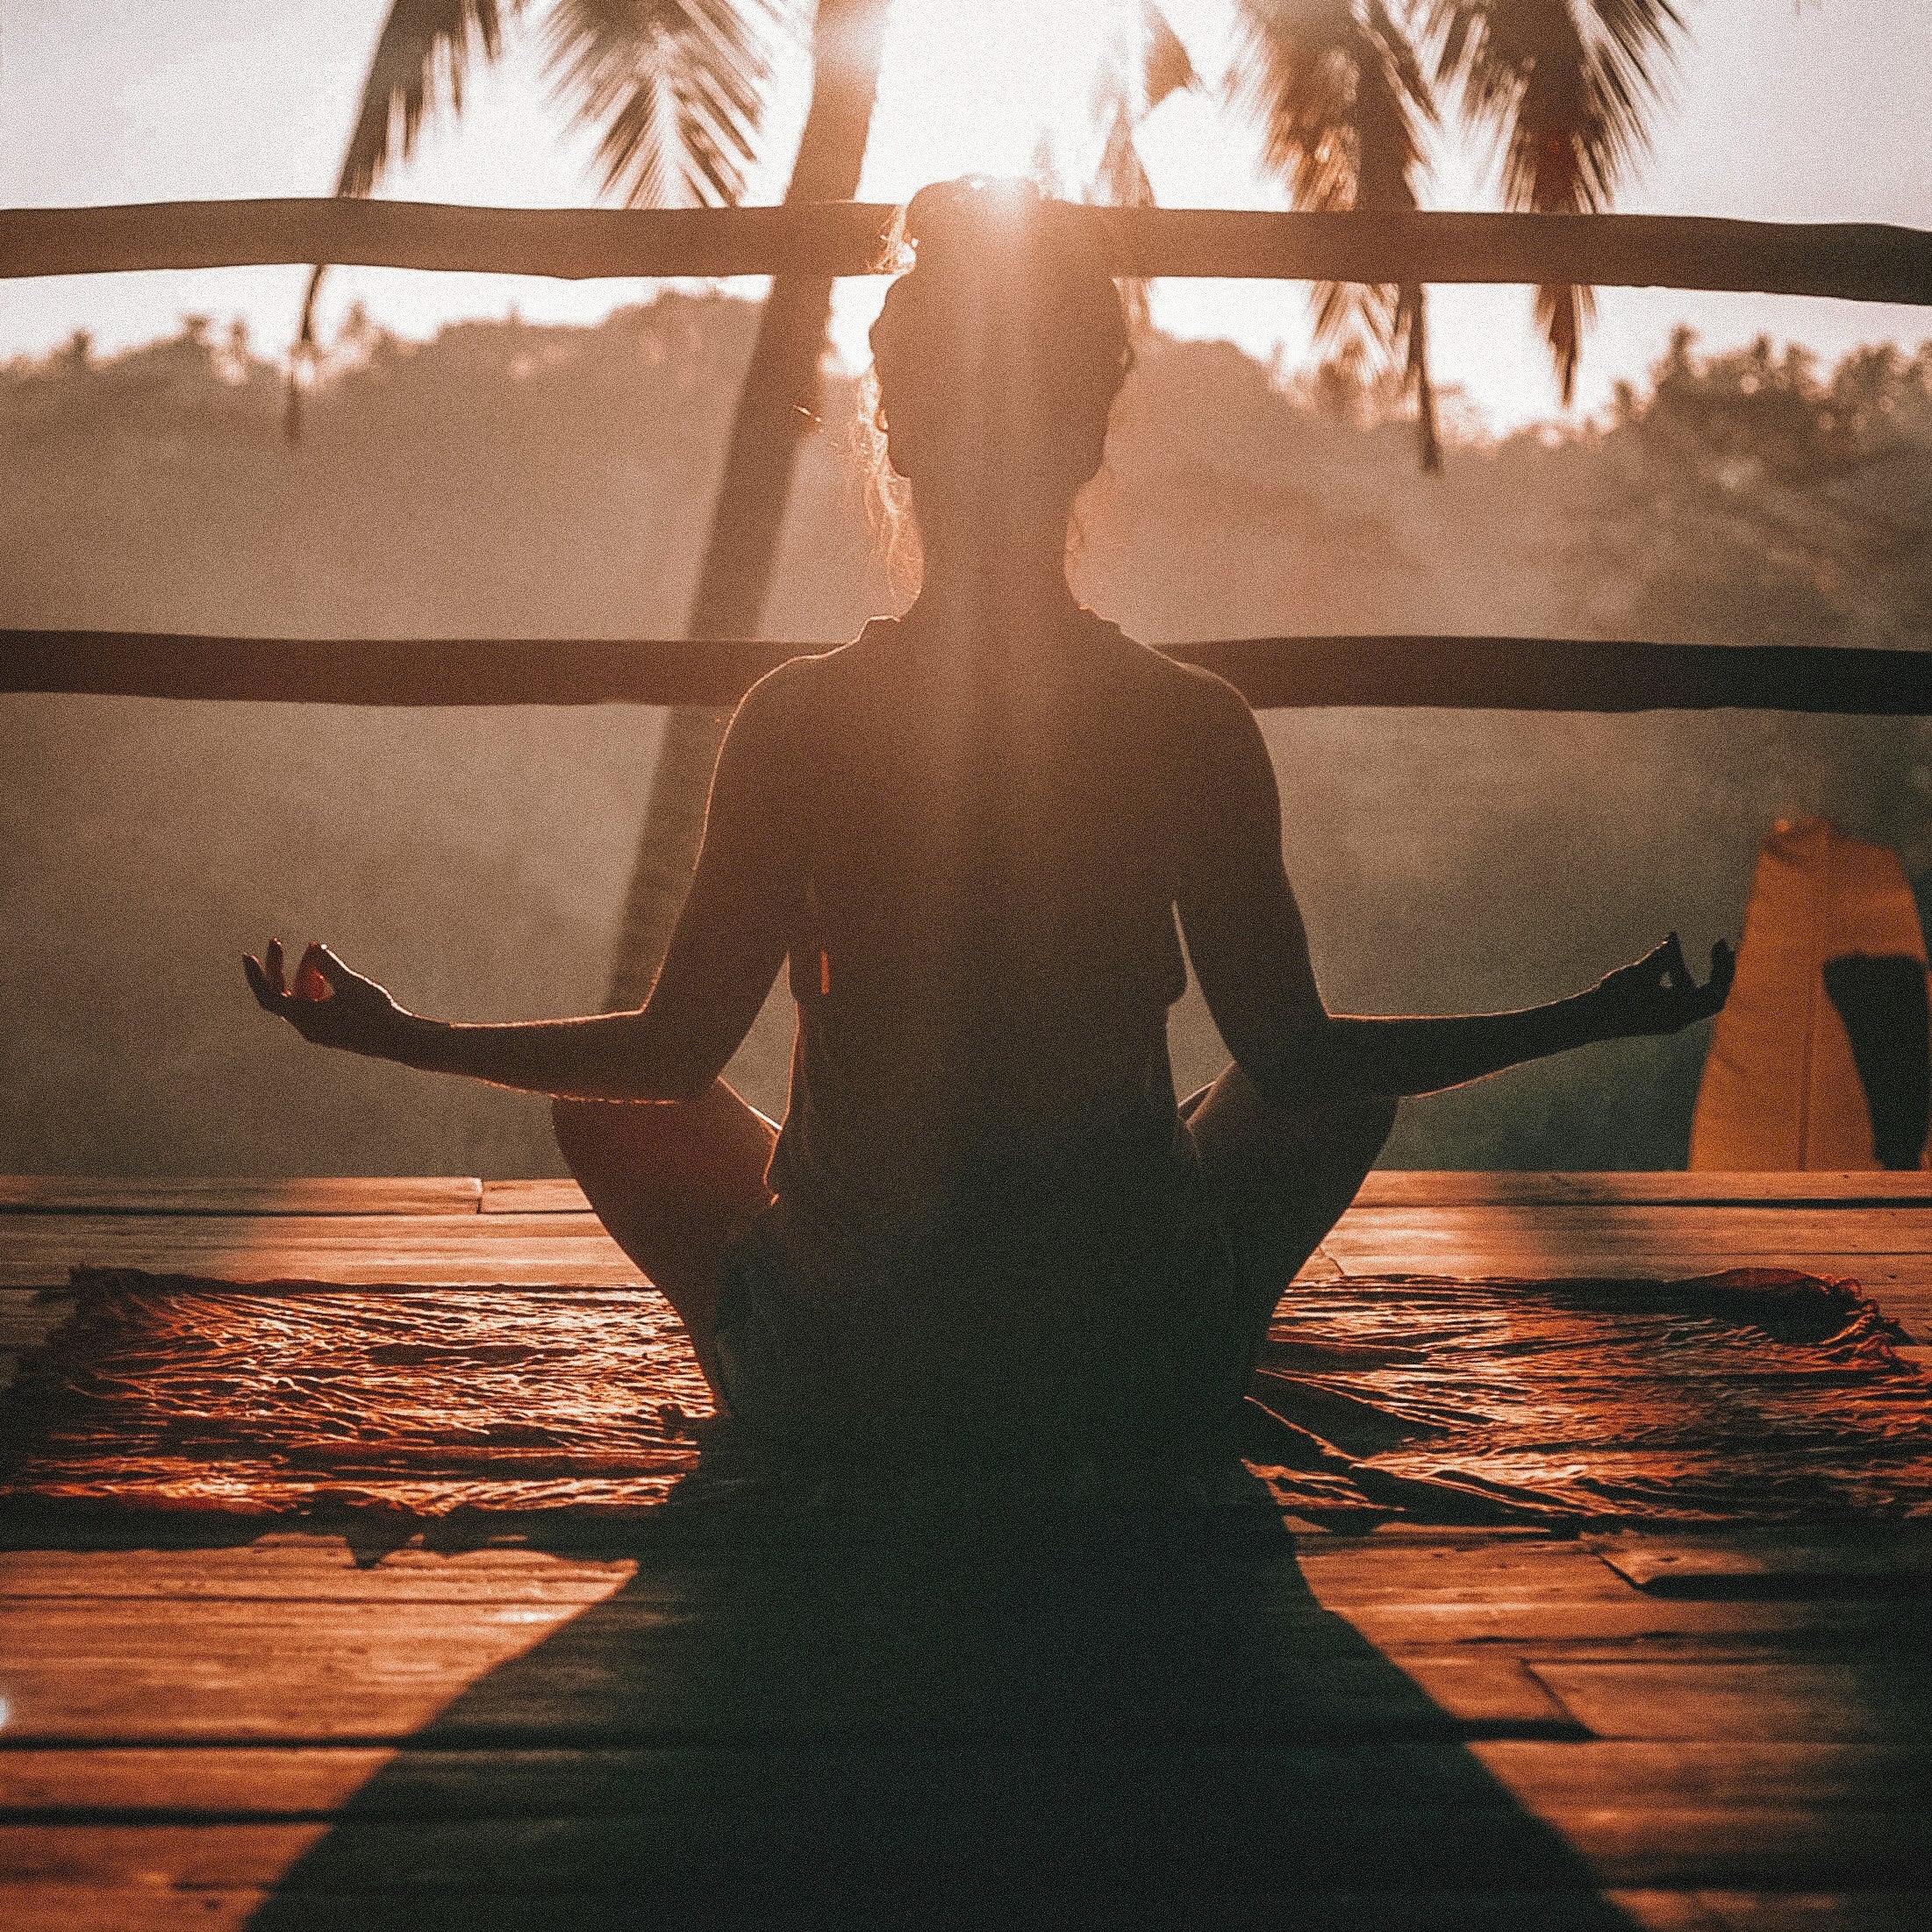 Woman meditating at sunset